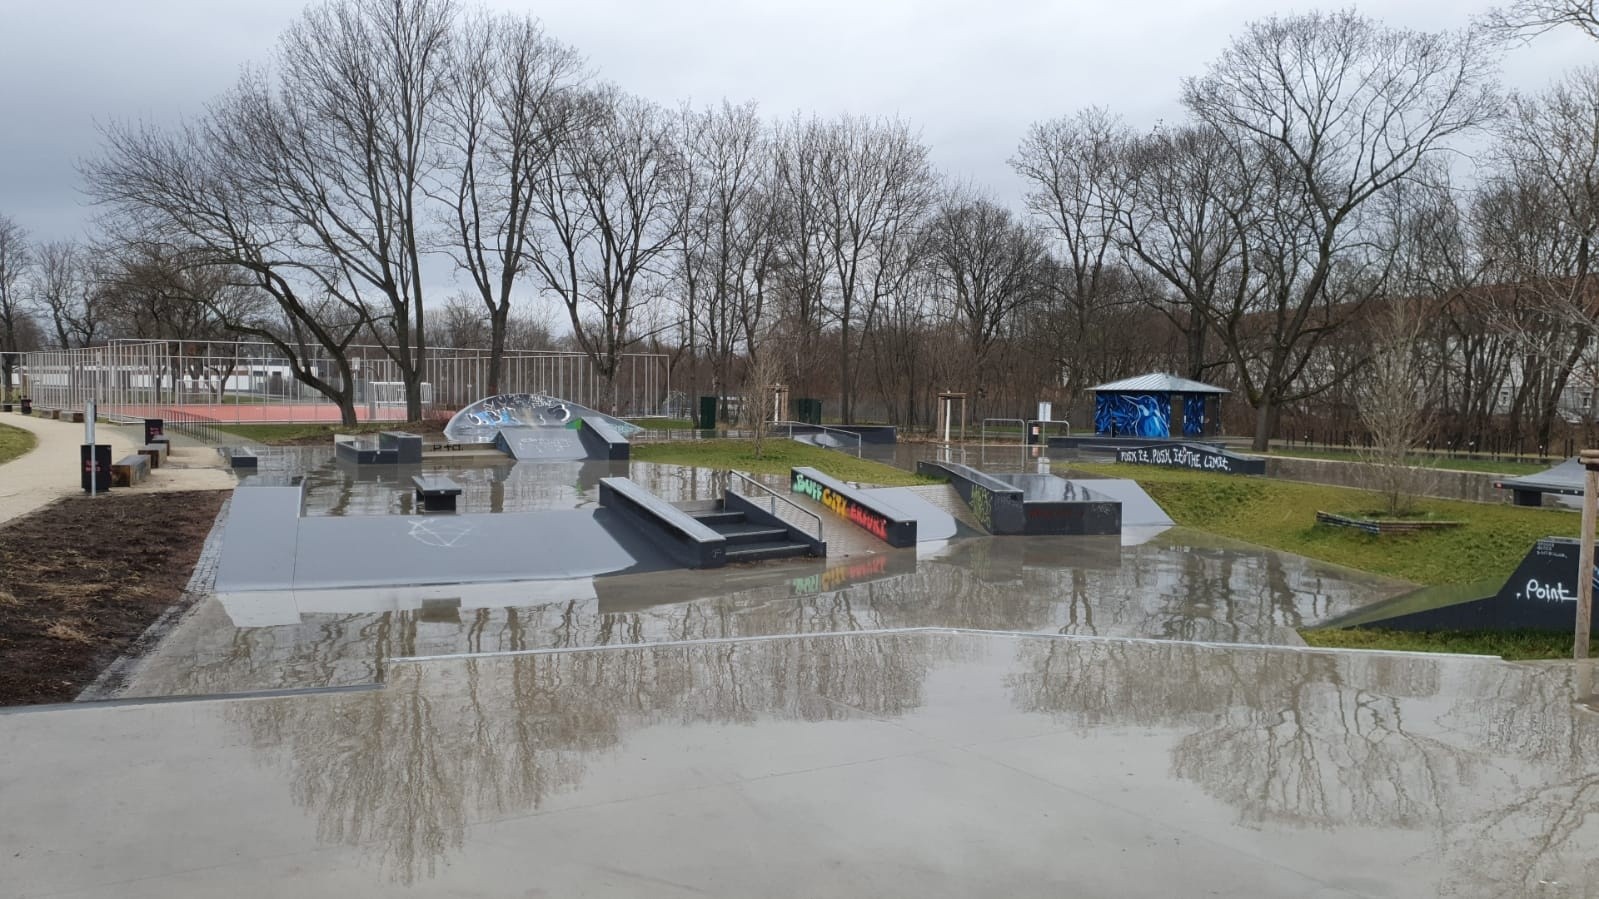 Skatepark Nordpark